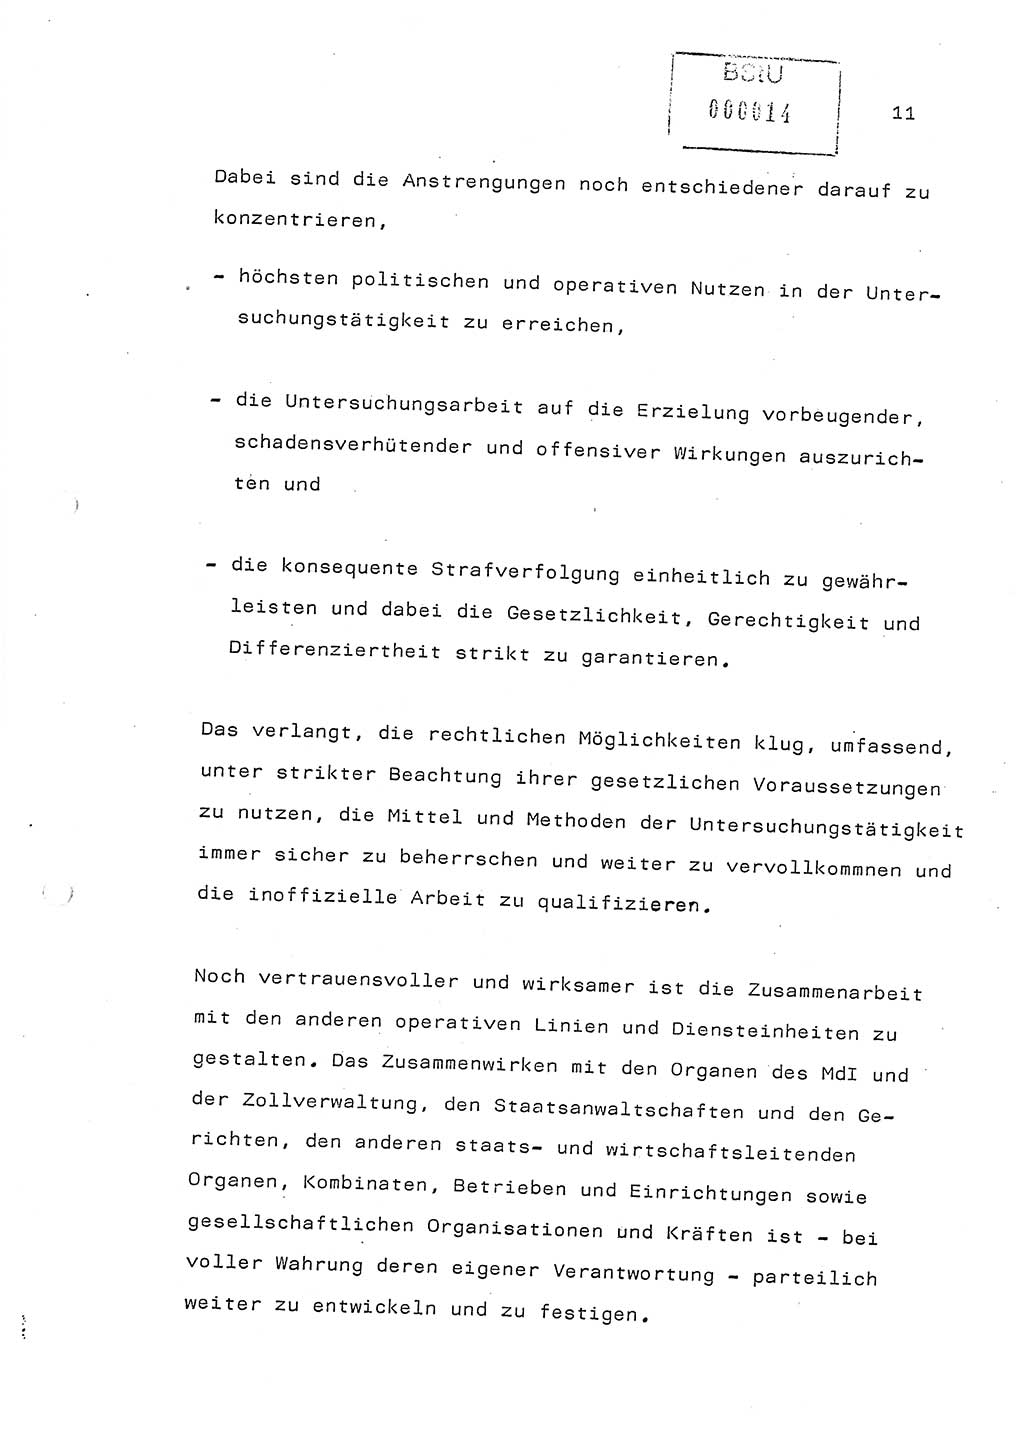 Referat (Generaloberst Erich Mielke) auf der Zentralen Dienstkonferenz am 24.5.1979 [Ministerium für Staatssicherheit (MfS), Deutsche Demokratische Republik (DDR), Der Minister], Berlin 1979, Seite 11 (Ref. DK DDR MfS Min. /79 1979, S. 11)